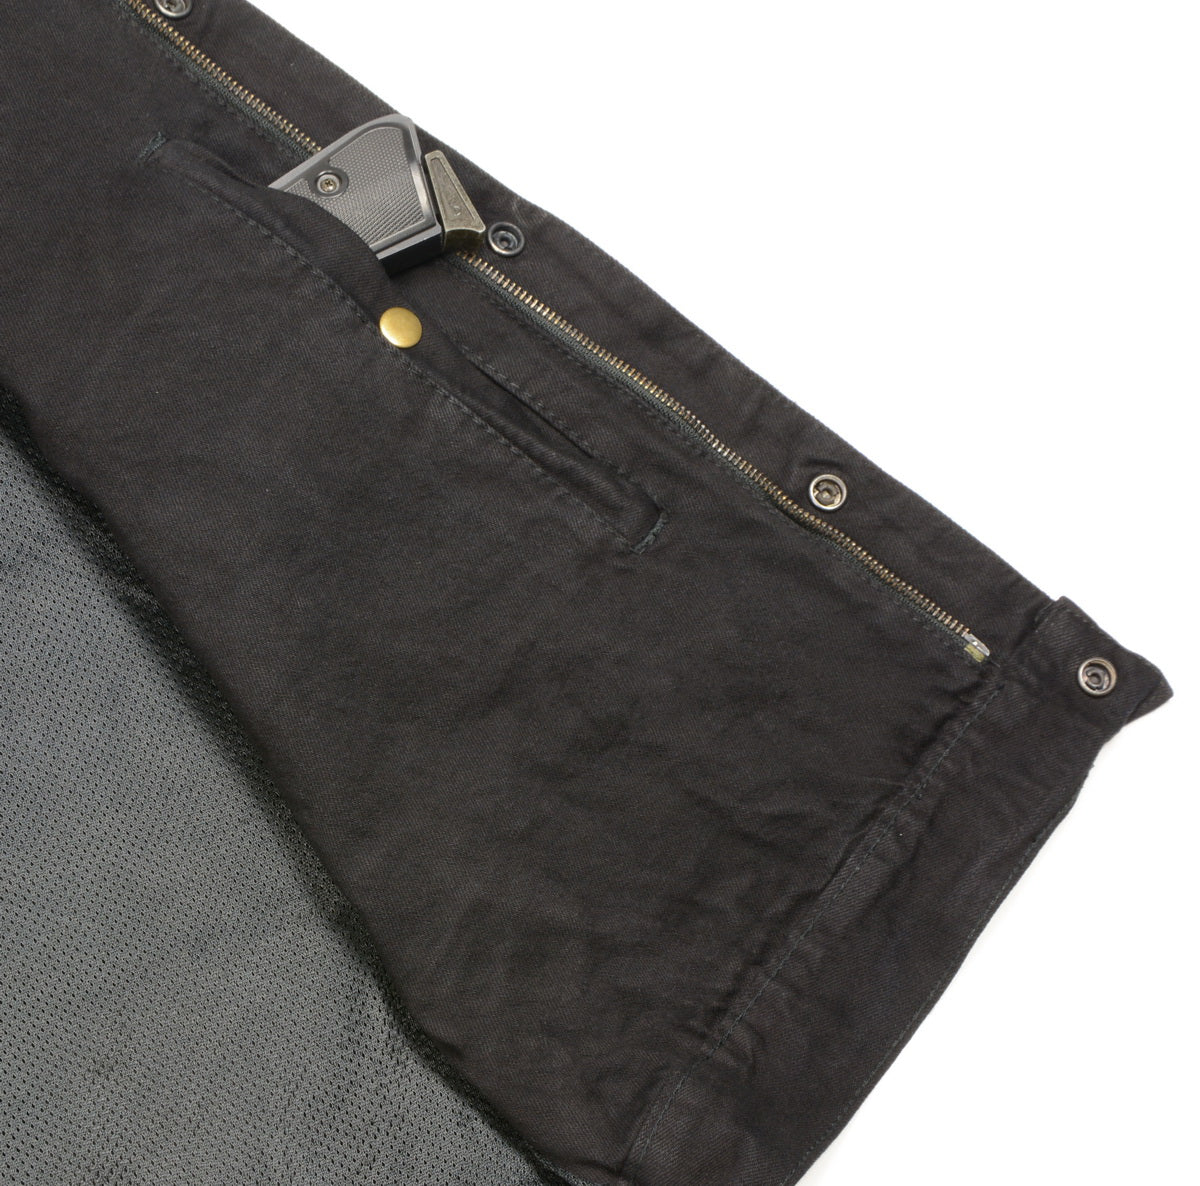 Club Vest CV3004LT Men's Black Collarless Denim Vest with Concealed Snaps and Hidden Zipper